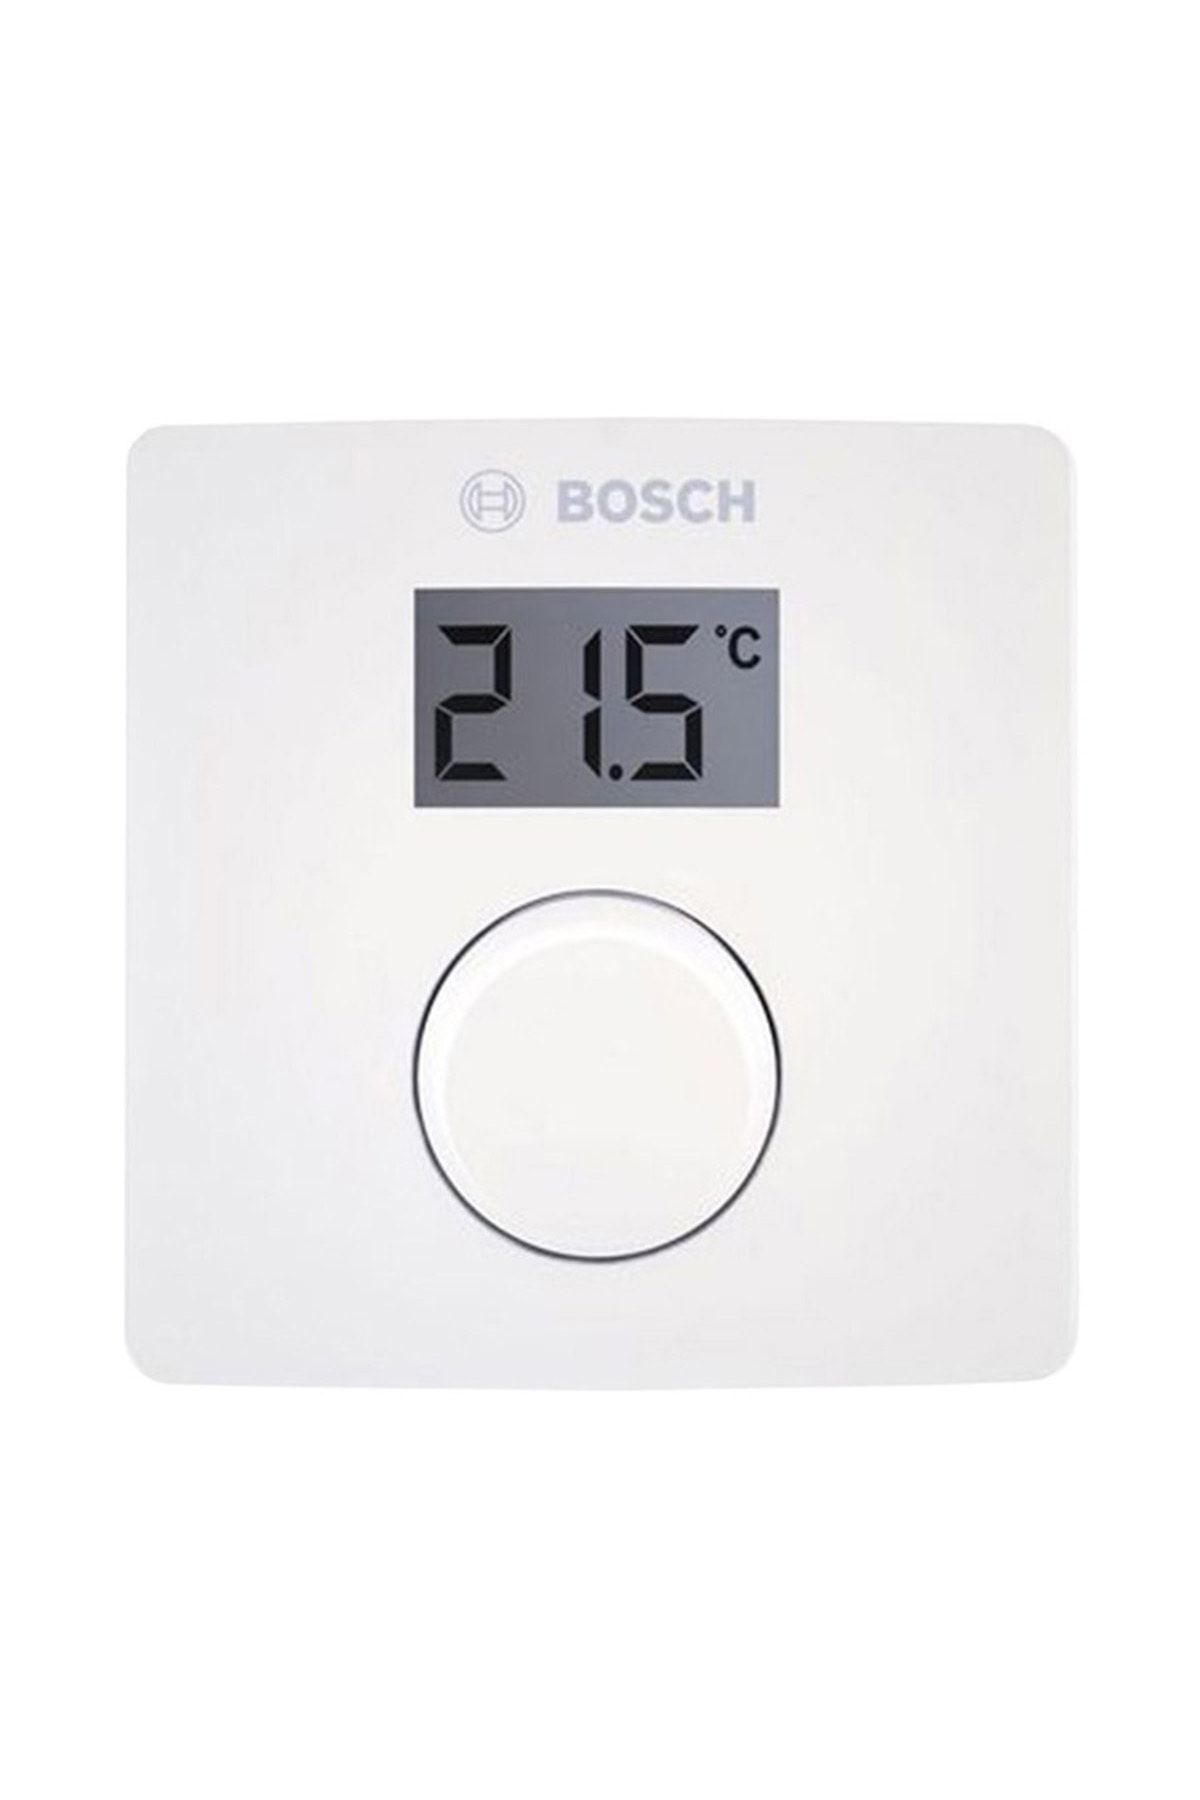 Bosch Cr10 Dijital Göstergeli Modülasyonlu Kablolu Oda Termostatı